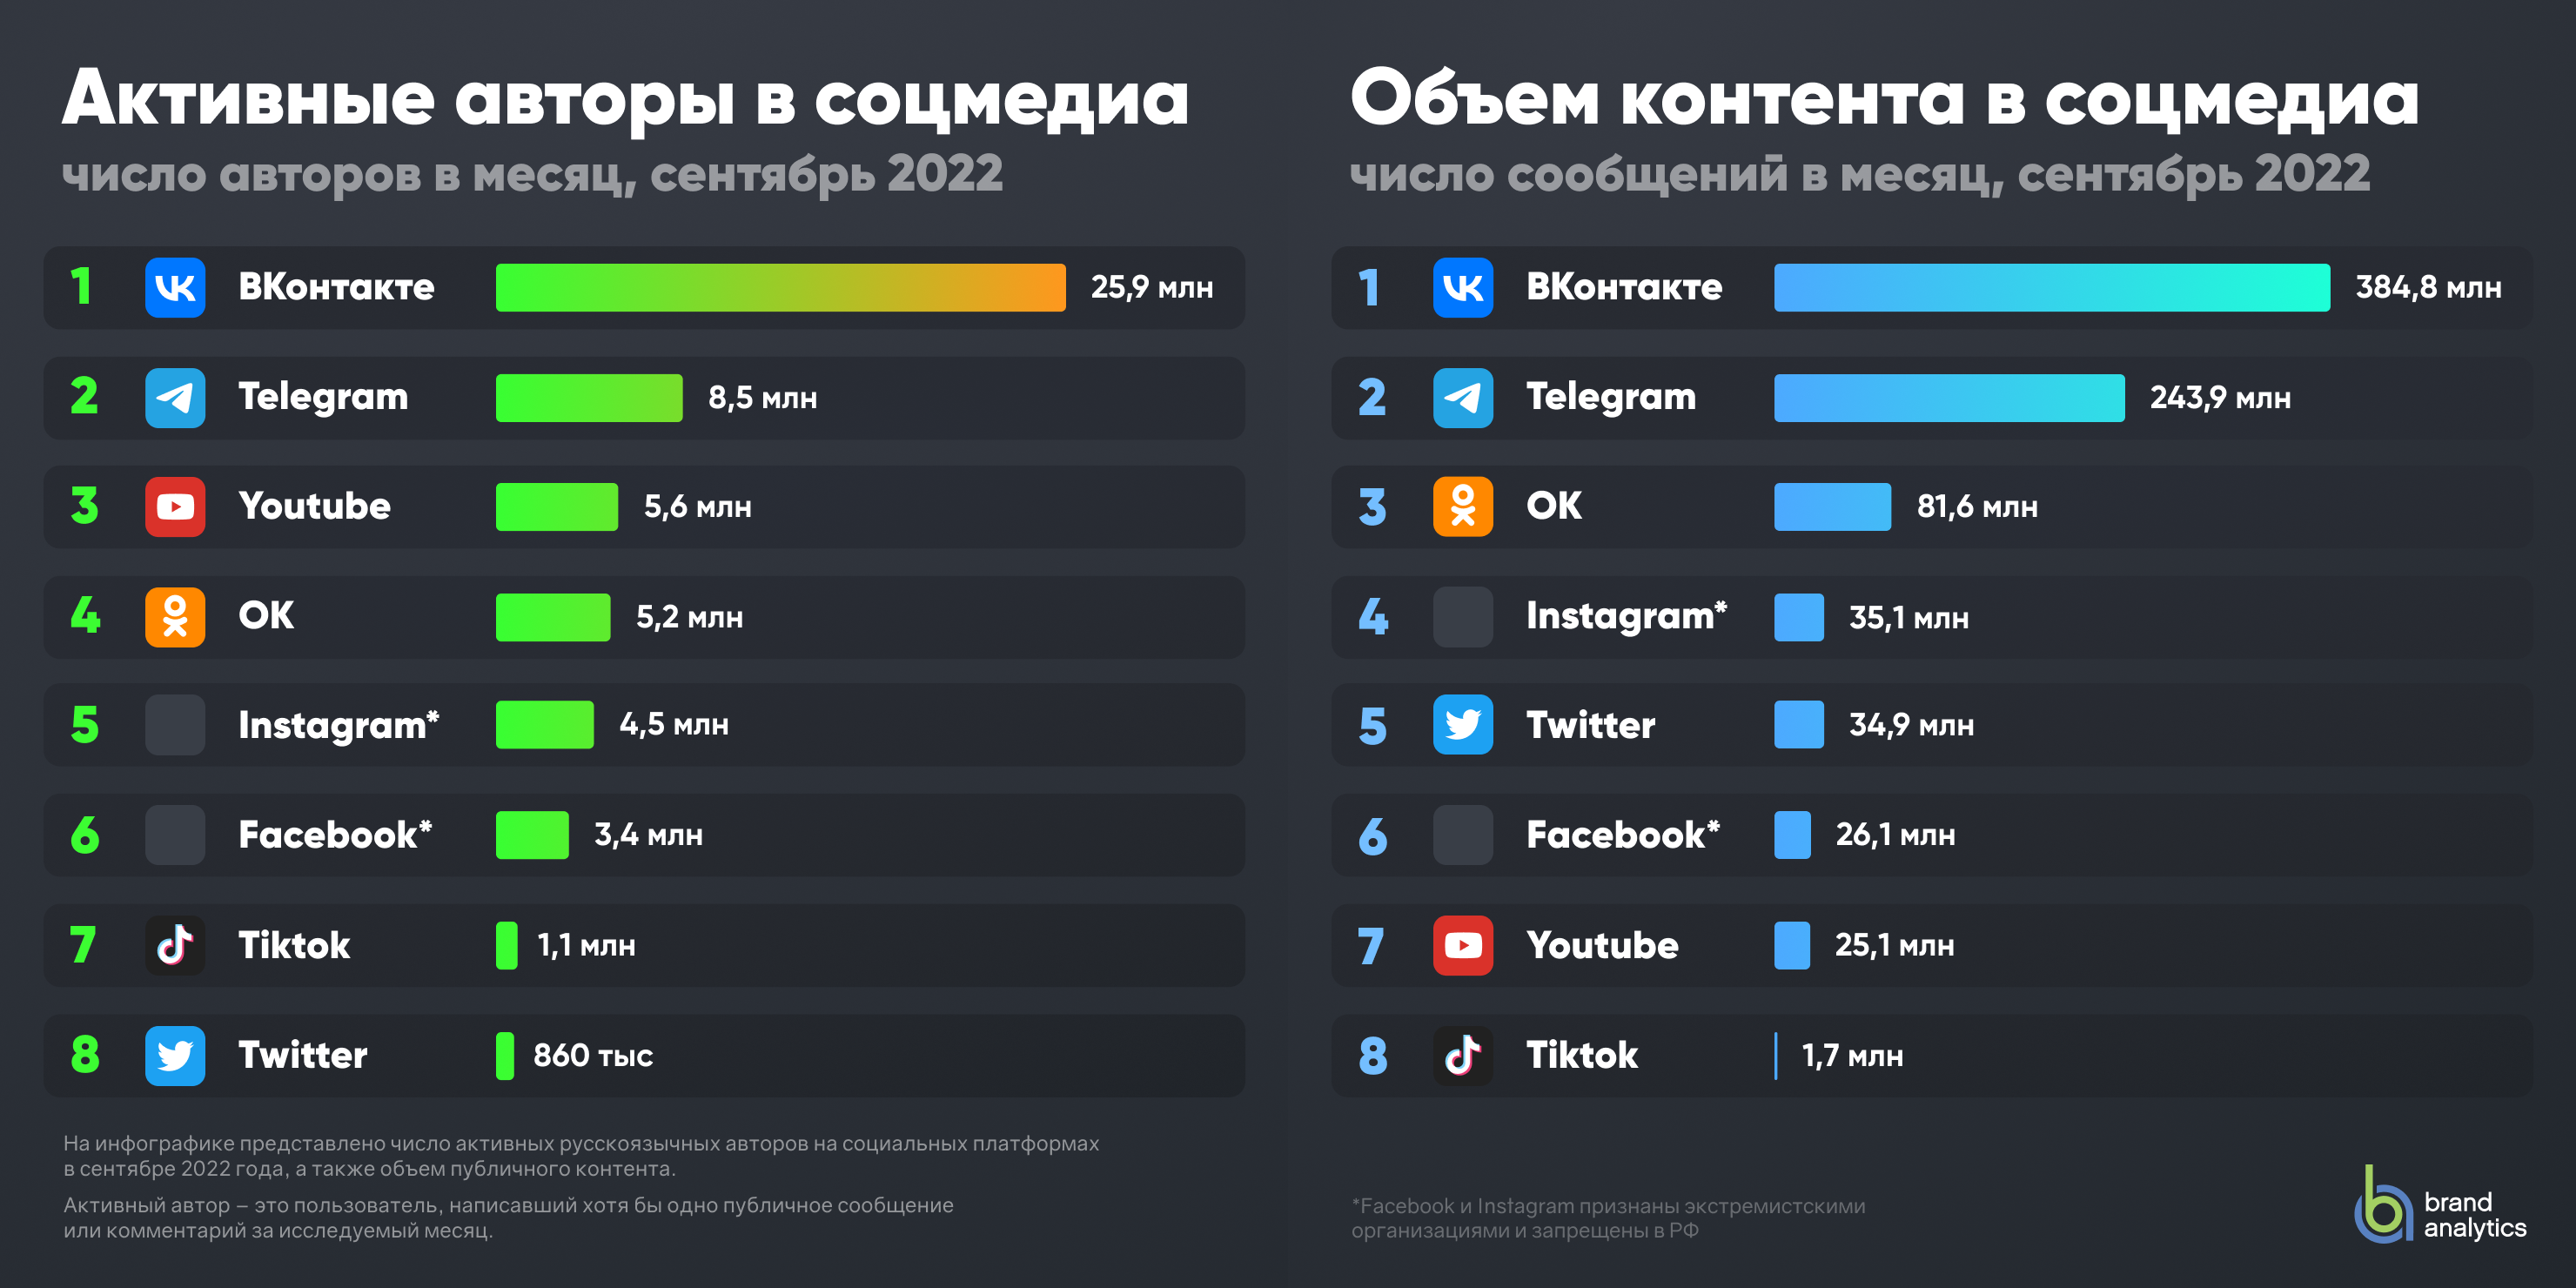 Новая сеть россия. Самые популярные соцсети в России в 2022 году. Самые популярные соцсети статистика. Самые популярные соц сети. Статистика соц сетей 2022.